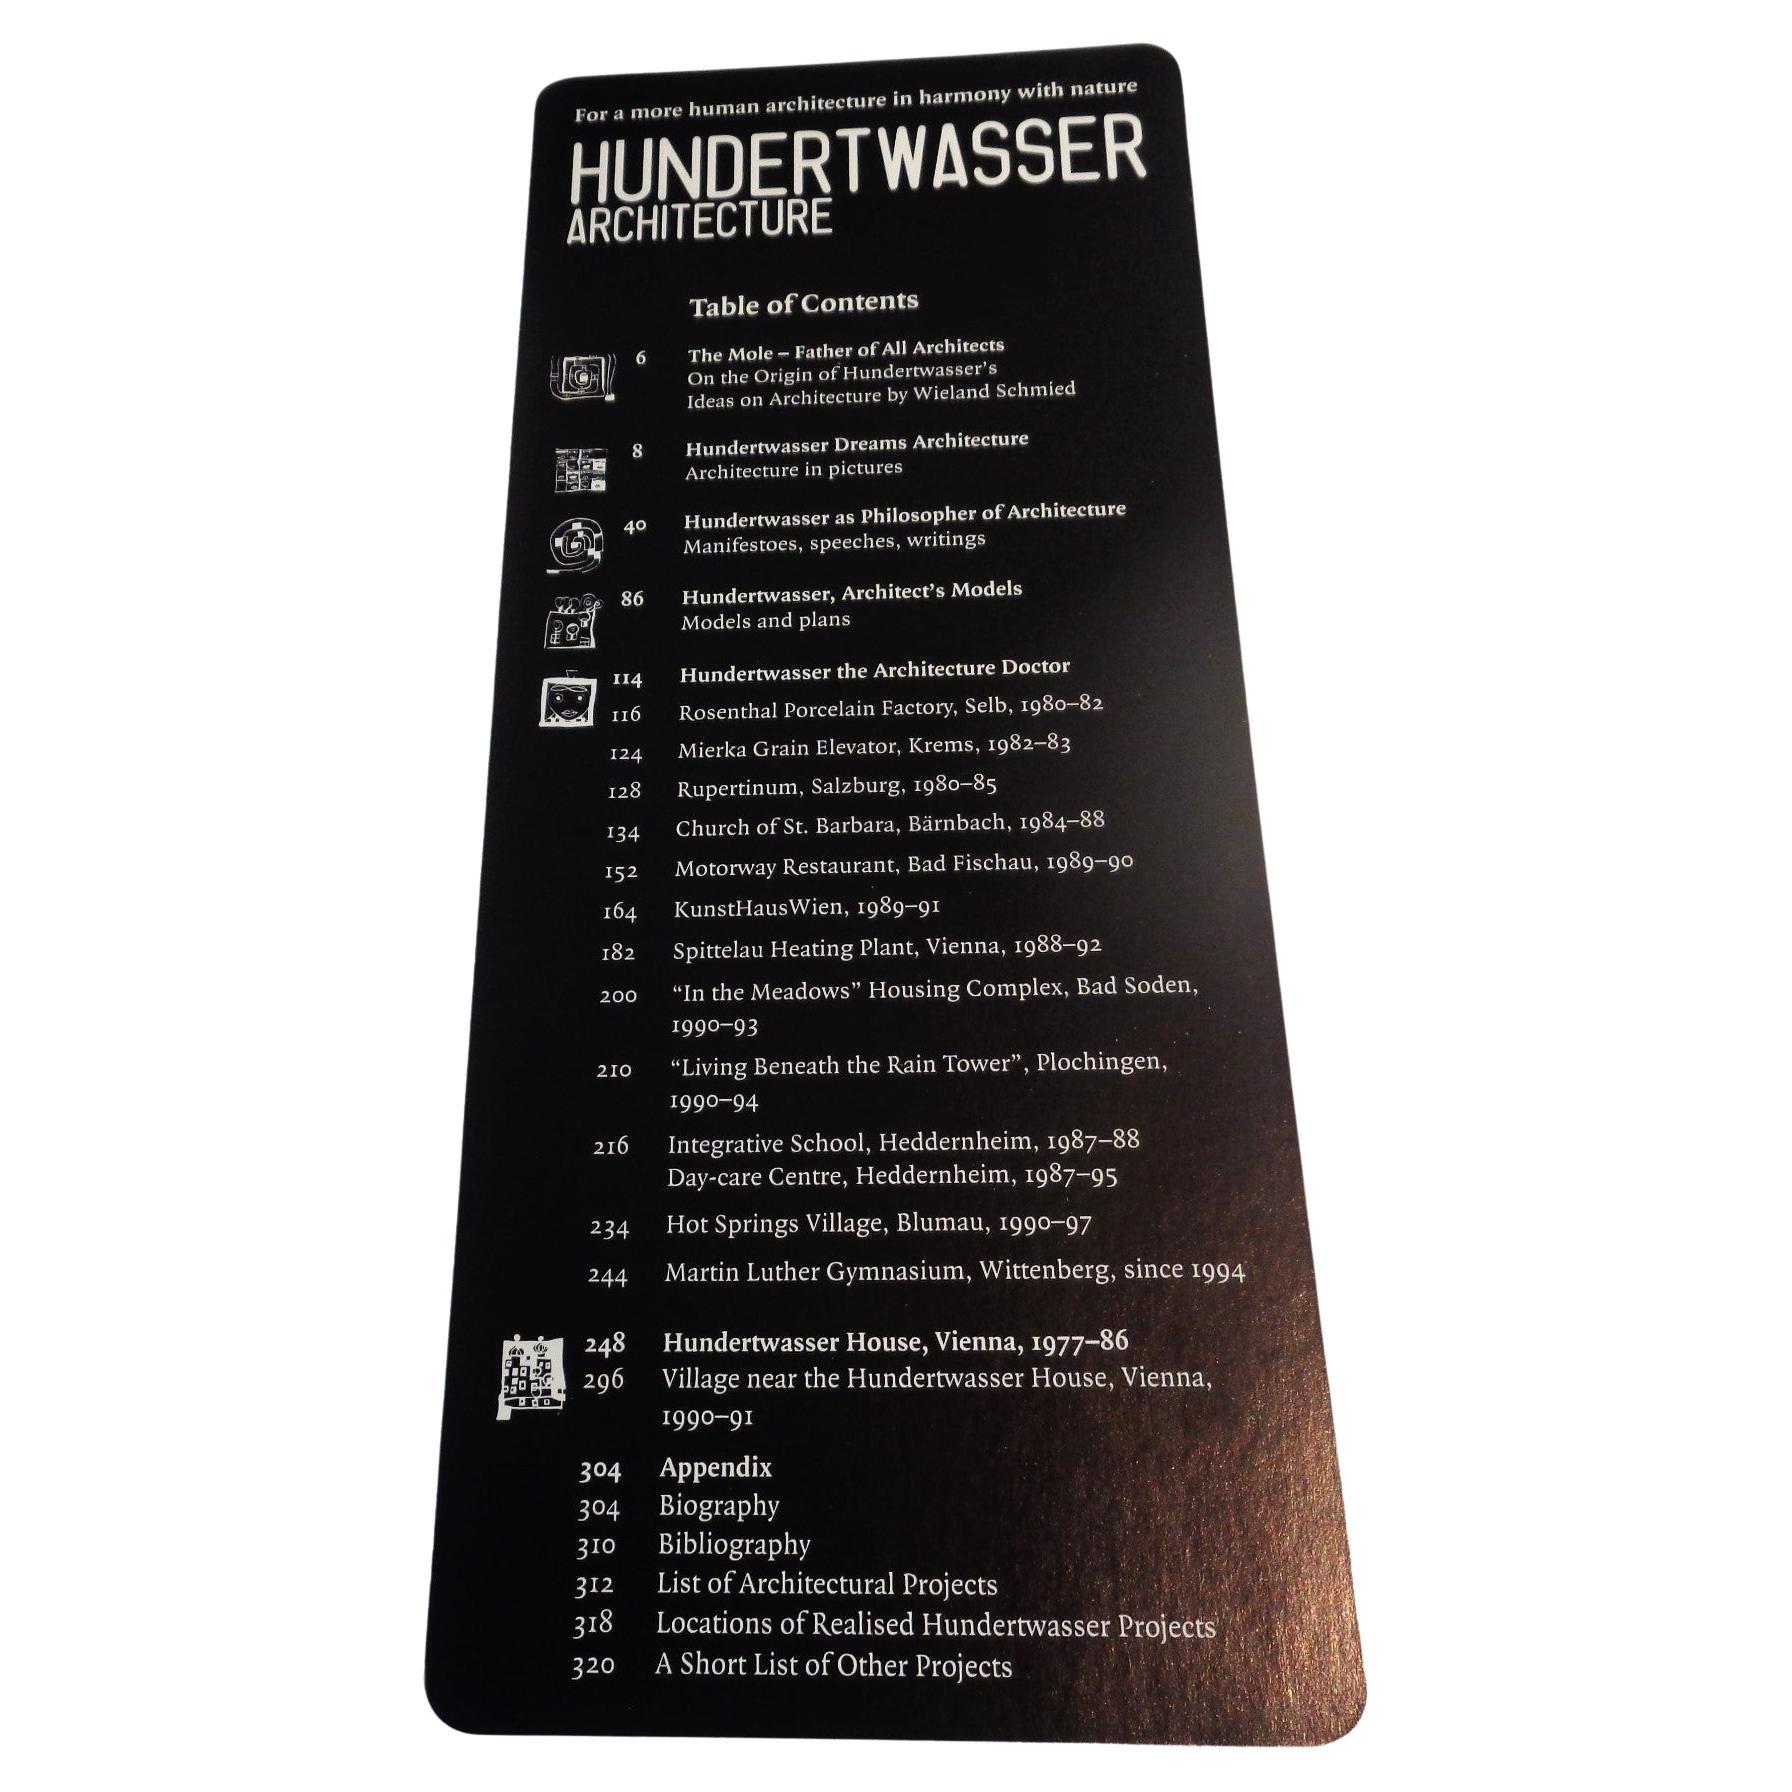 Paper Hundertwasser Architecture - 1997 Taschen - 1st Edition For Sale